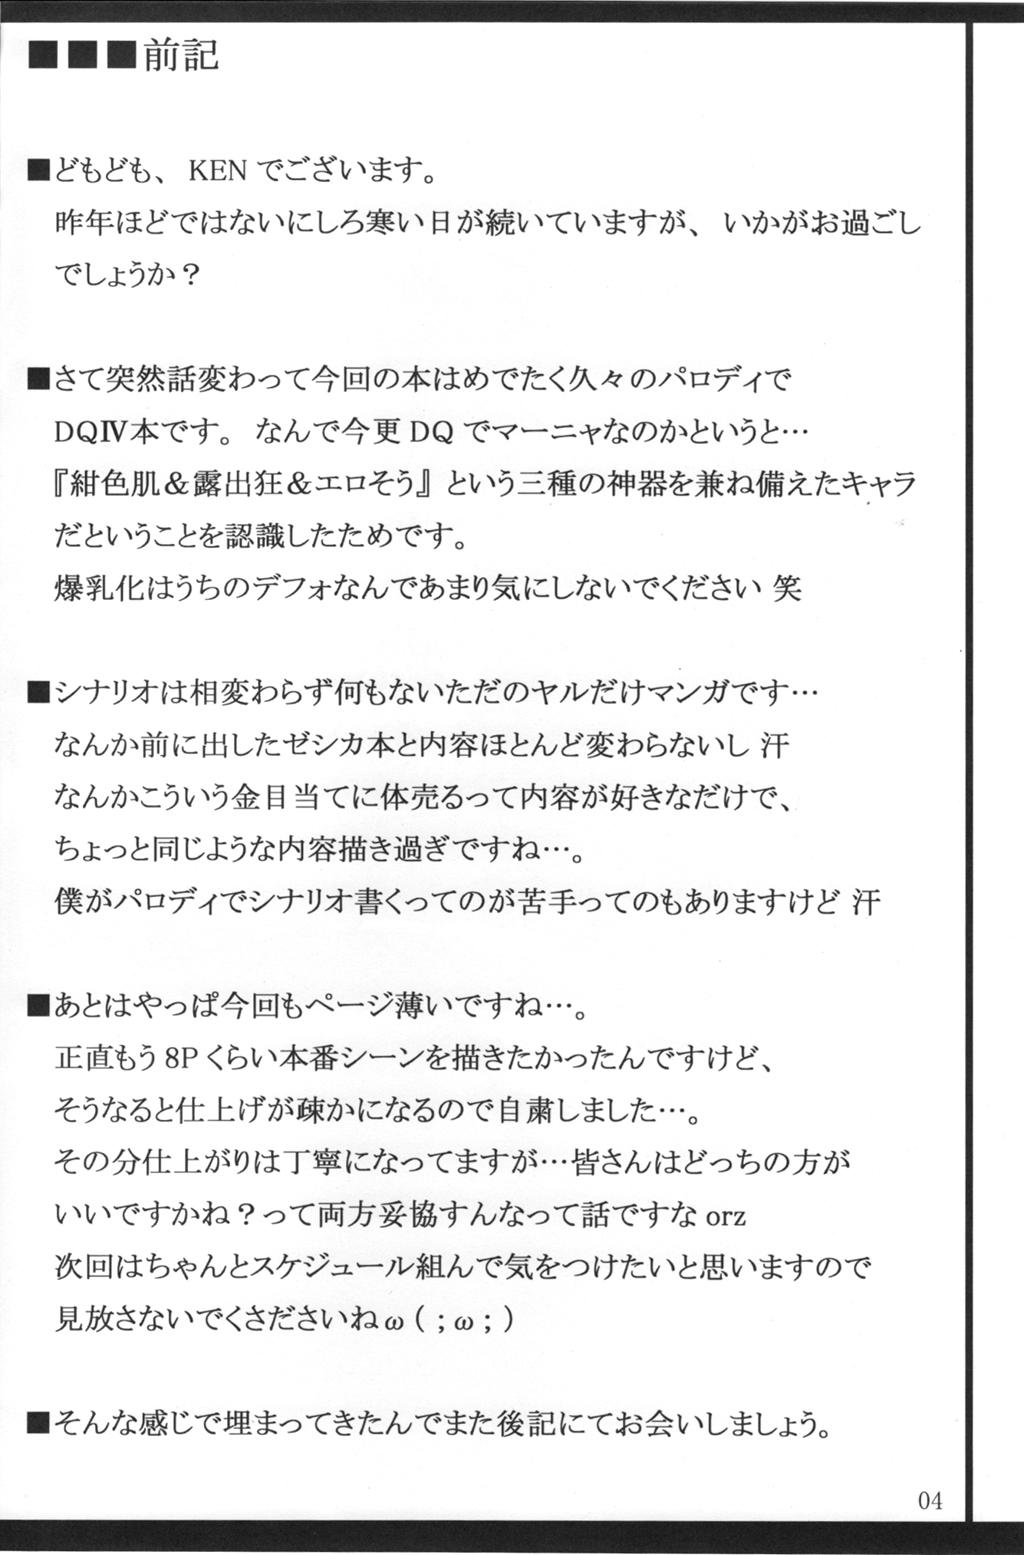 Rubdown Inbai Manya no Pafupafu Koya Seikatsu - Dragon quest iv Amigo - Page 3